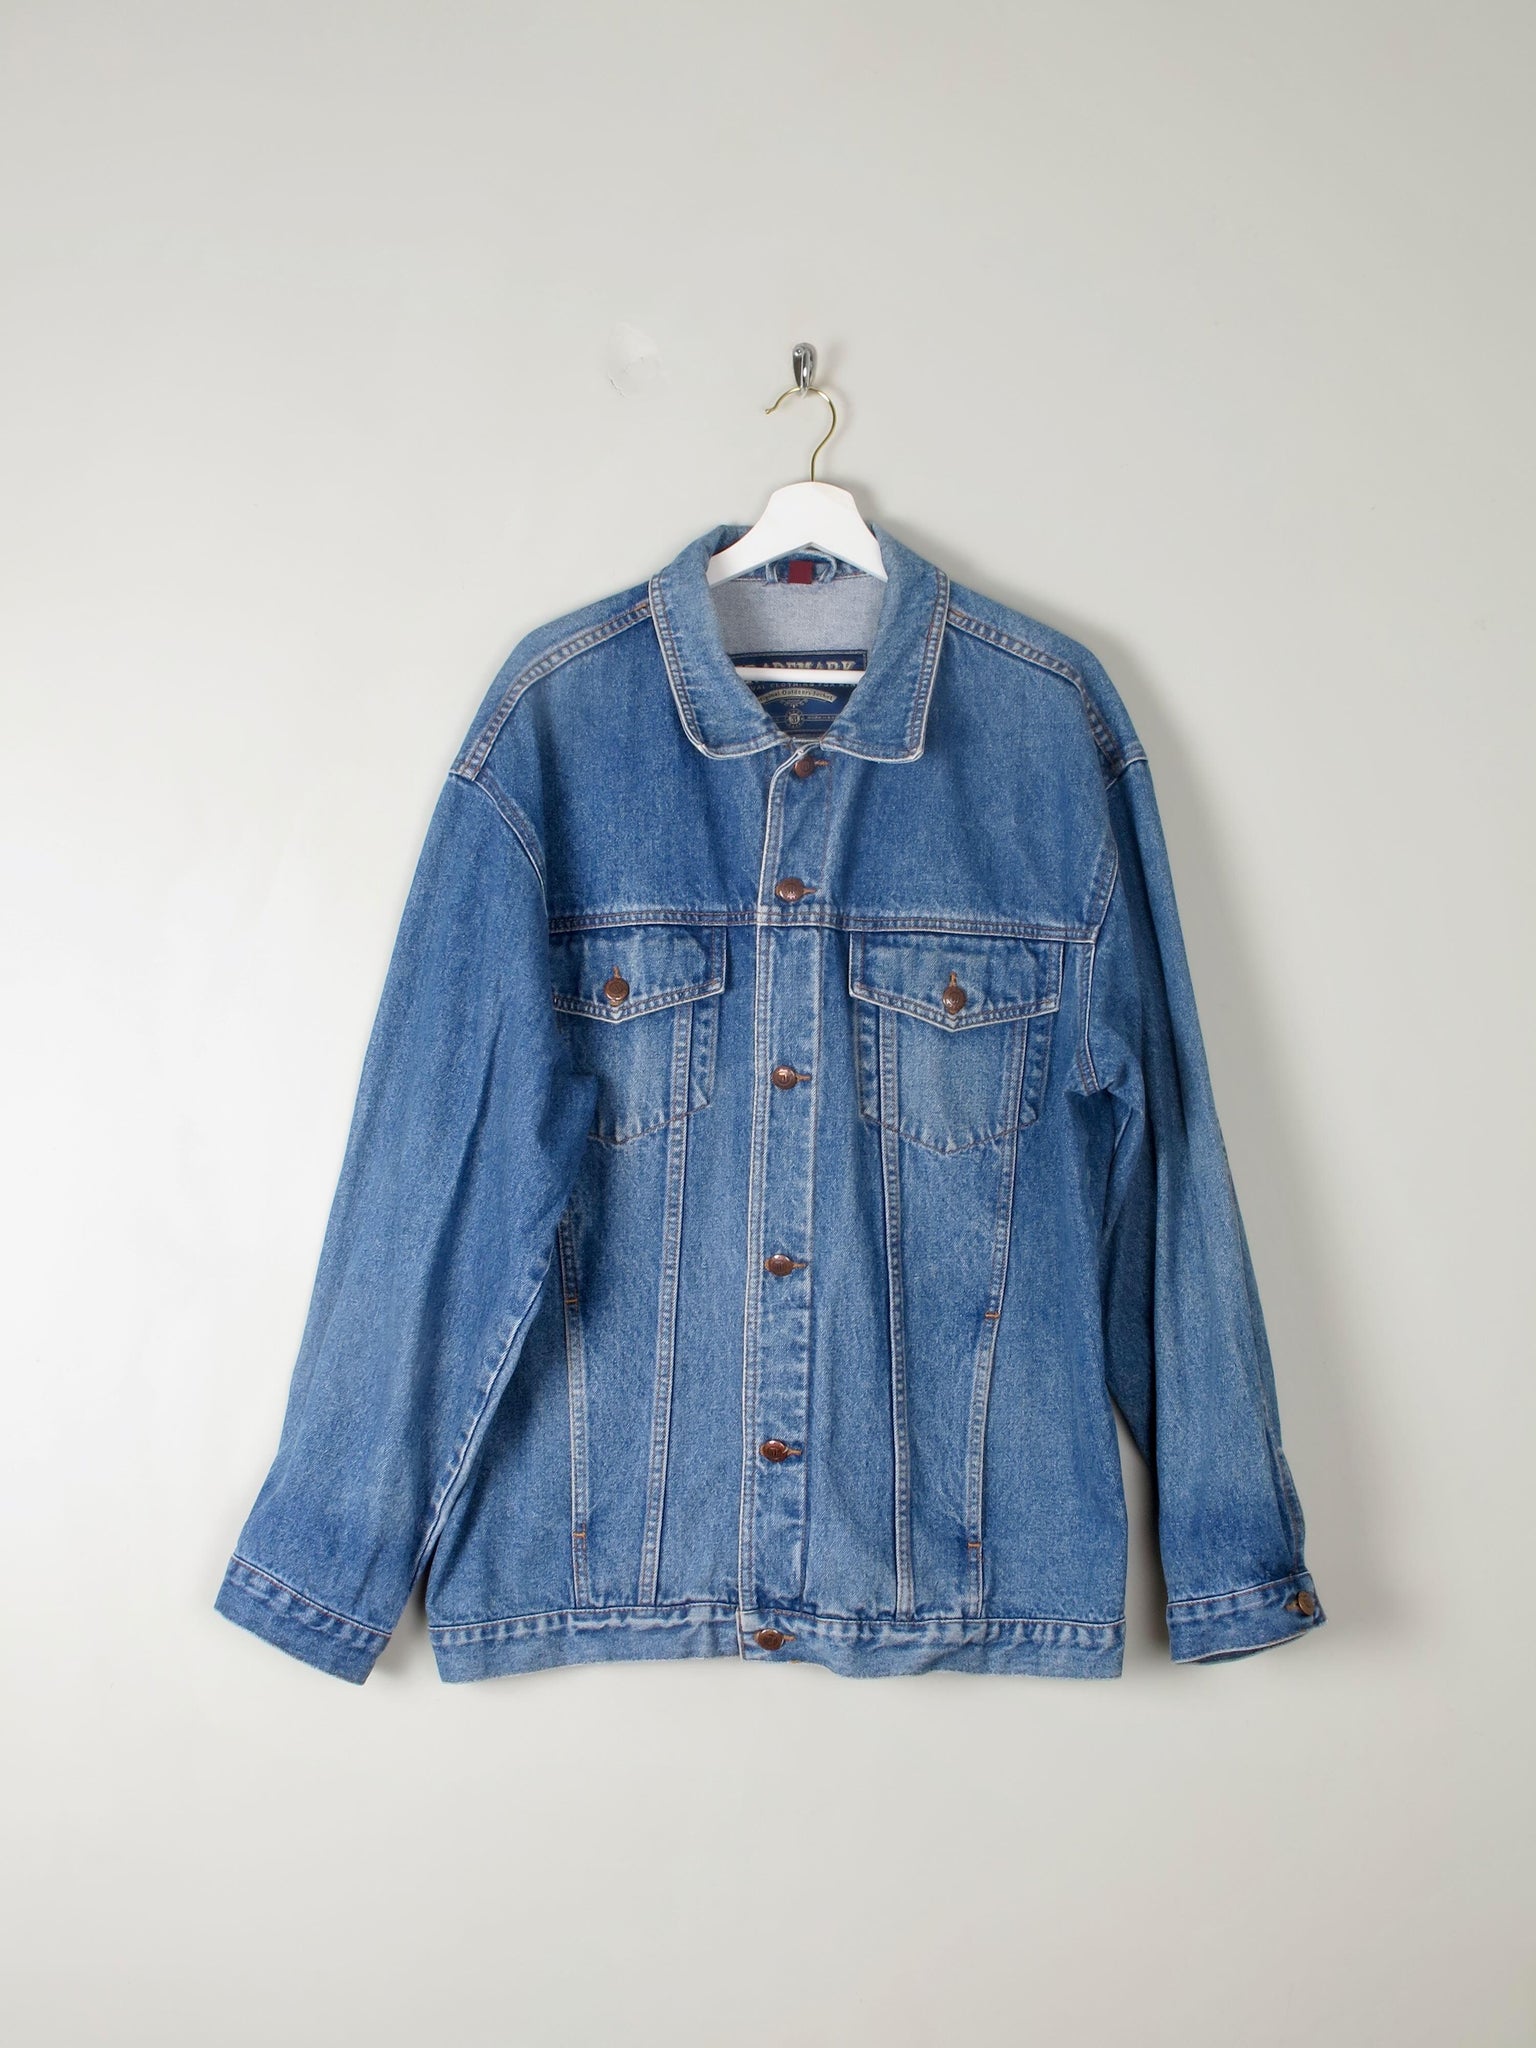 Men's Vintage Blue Denim Jacket L/XL - The Harlequin